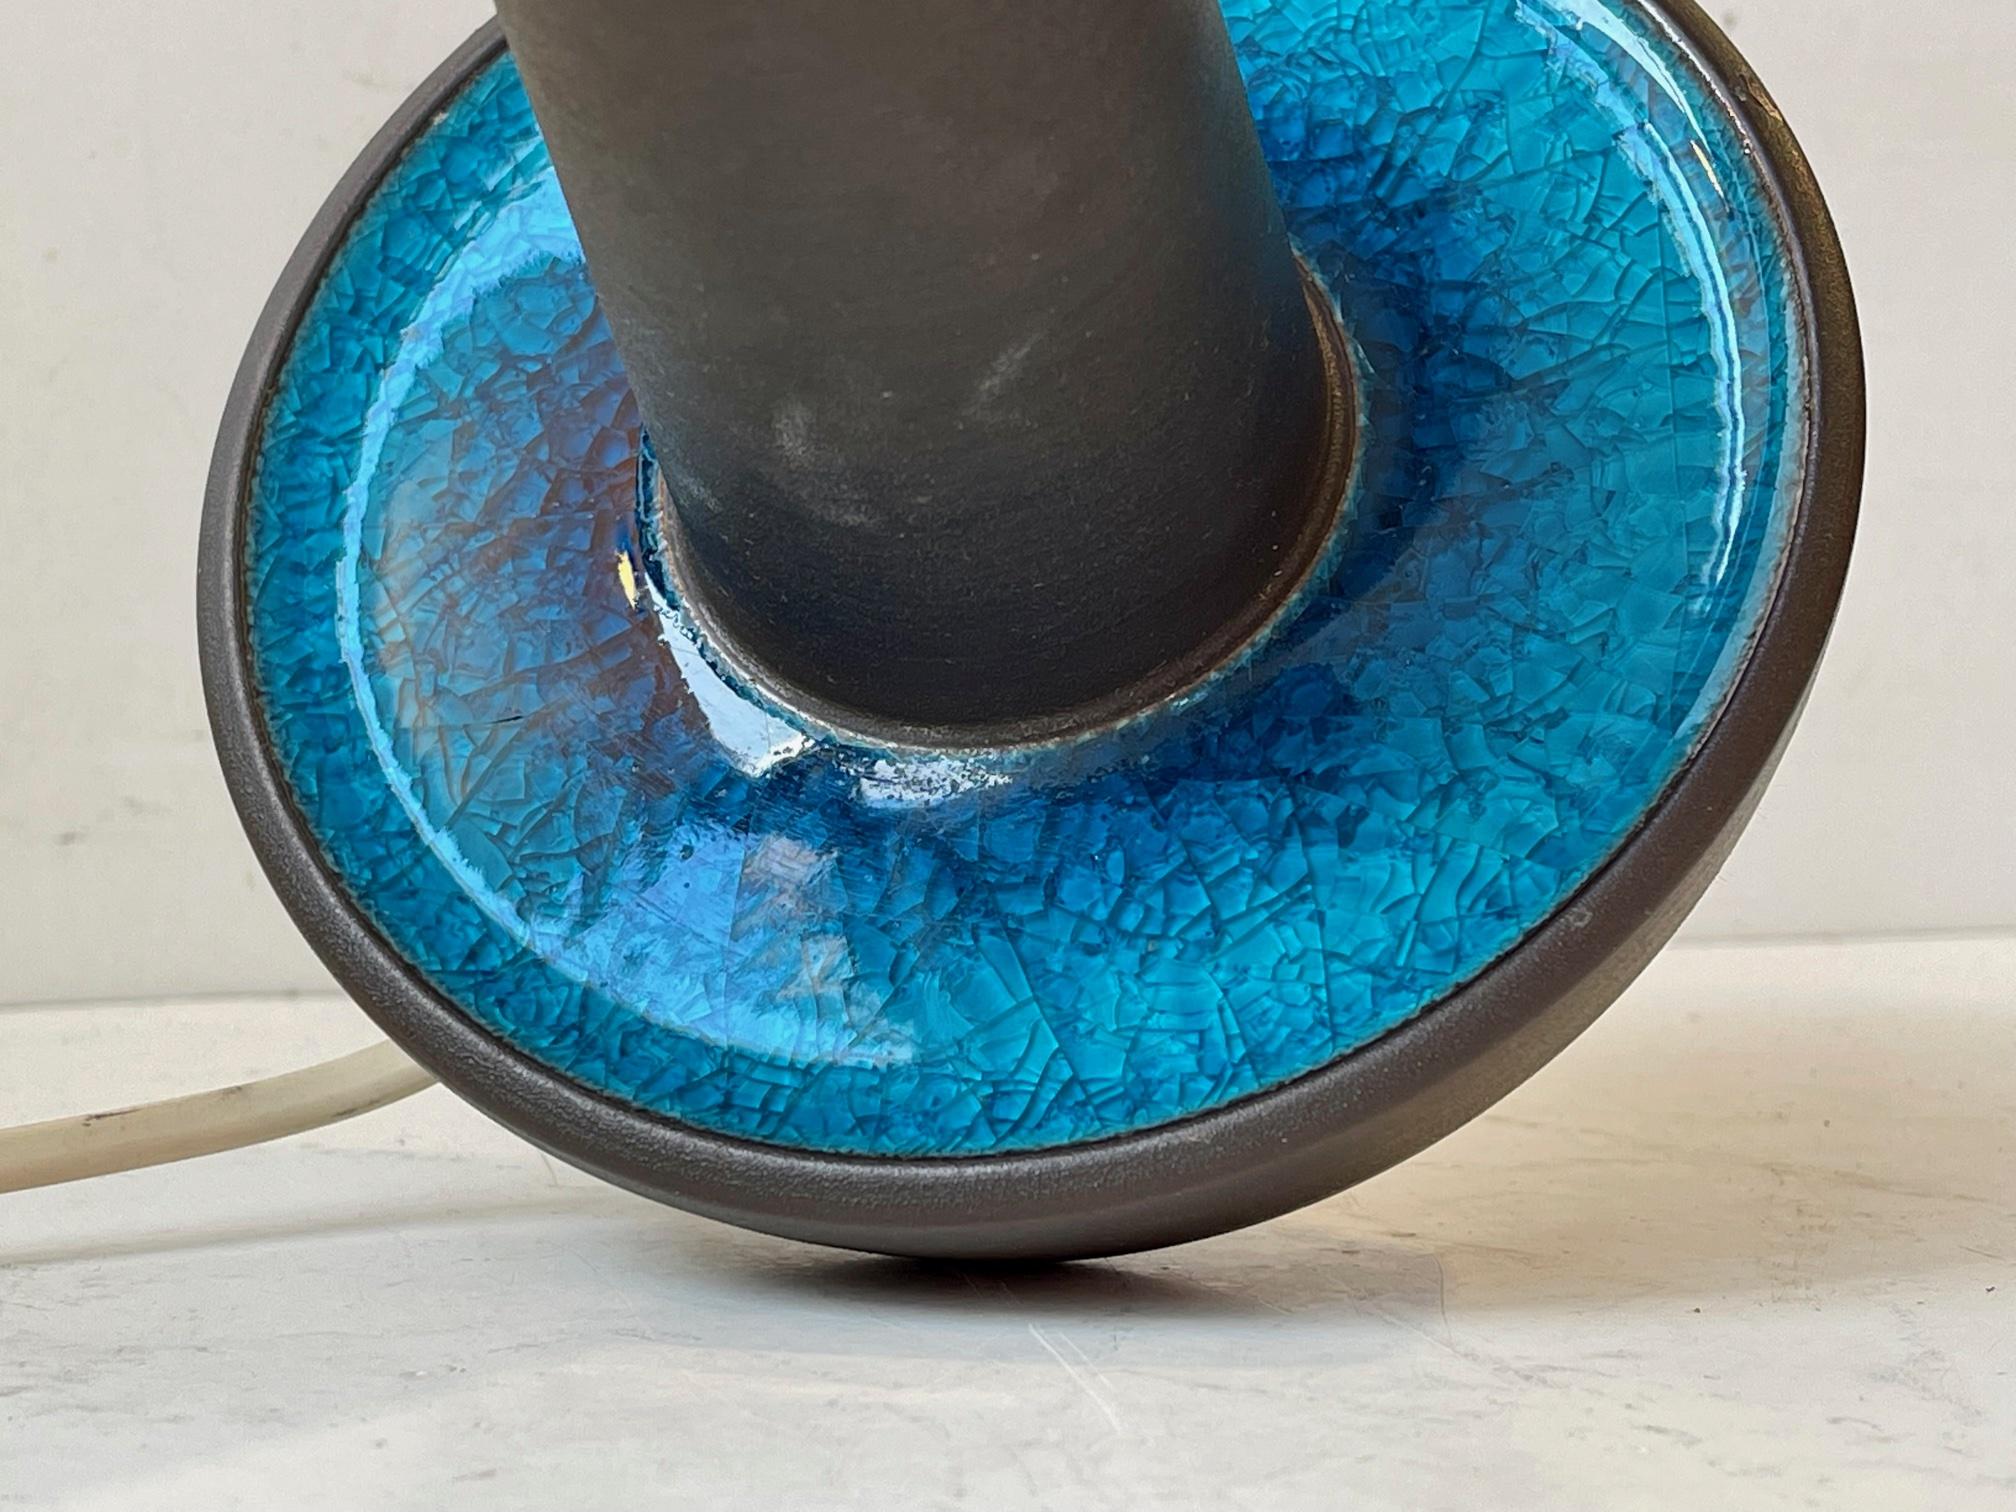 Eines der begehrtesten Designs des dänischen Keramikers Einar Johansen. Diese Version mit auffälliger türkisfarbener Craquelé-Glasur und blauen Akzenten wird gemeinhin als Caribbean Sea bezeichnet. Diese Leuchte hat die Nummer 1072 und misst 25 cm